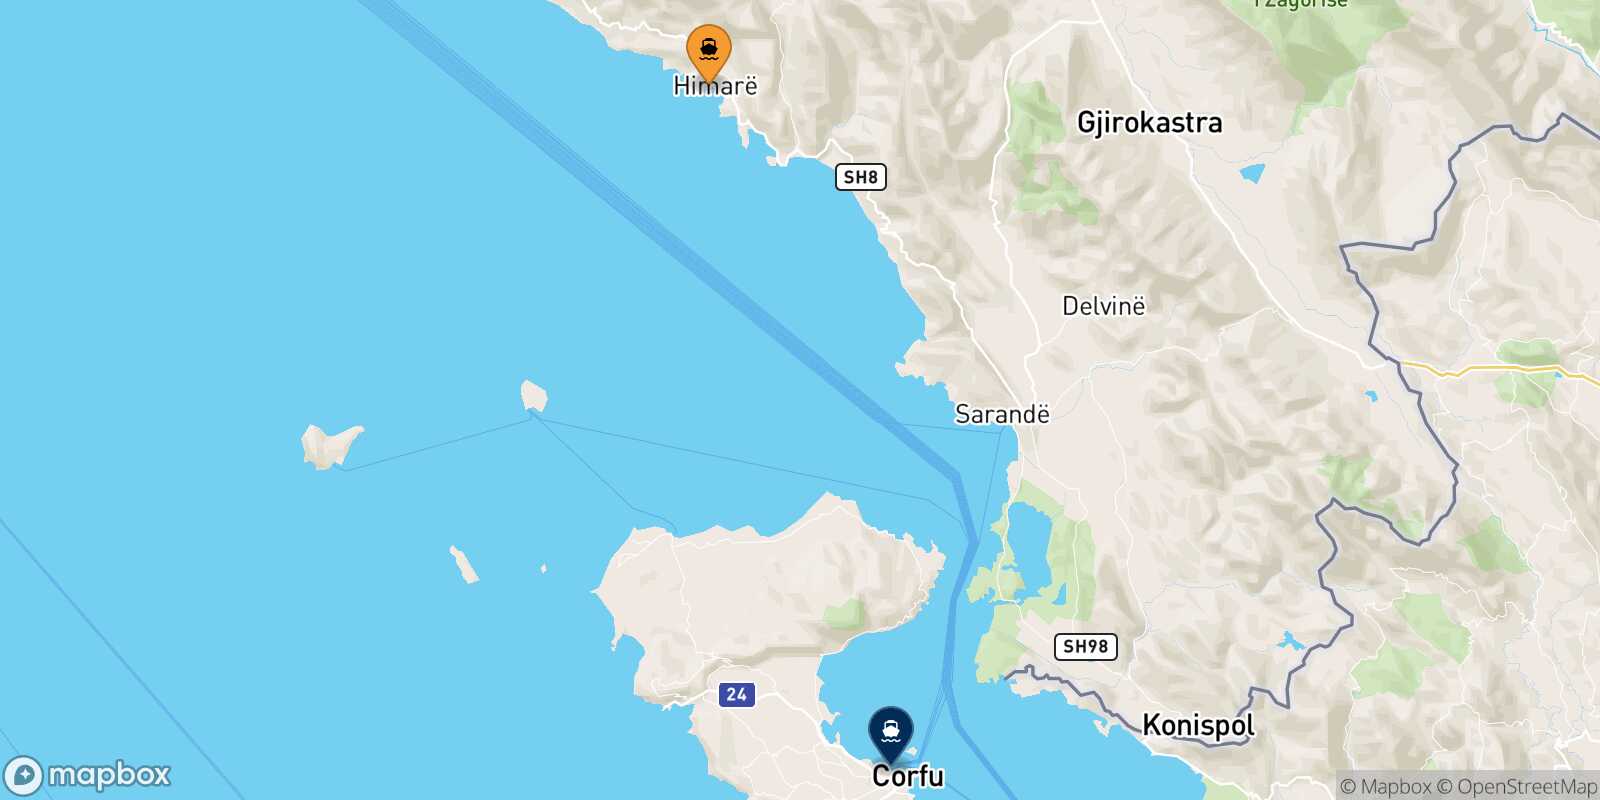 Mappa della rotta Himare Corfu